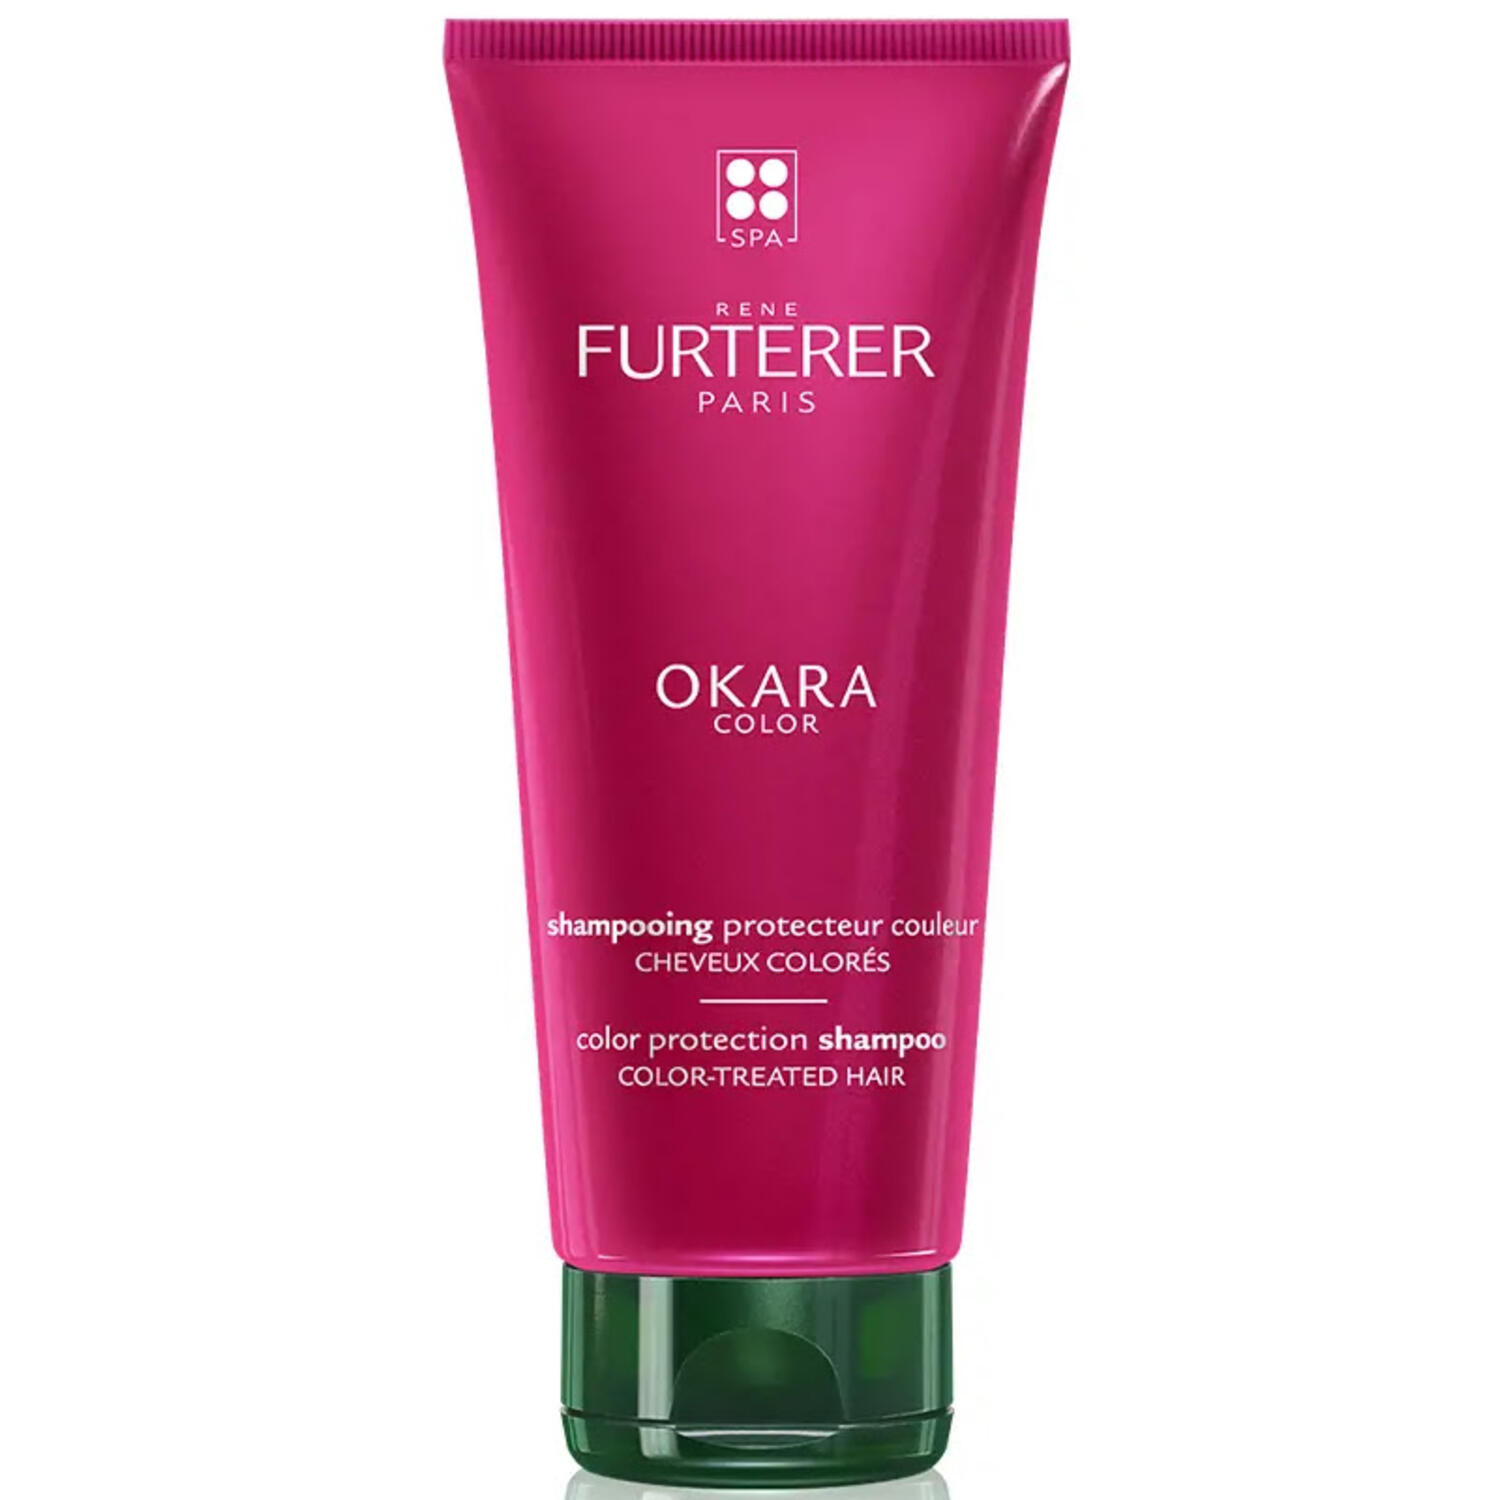 René Furterer Šampon pro barvené vlasy Okara (Color Protection Shampoo) 250 ml